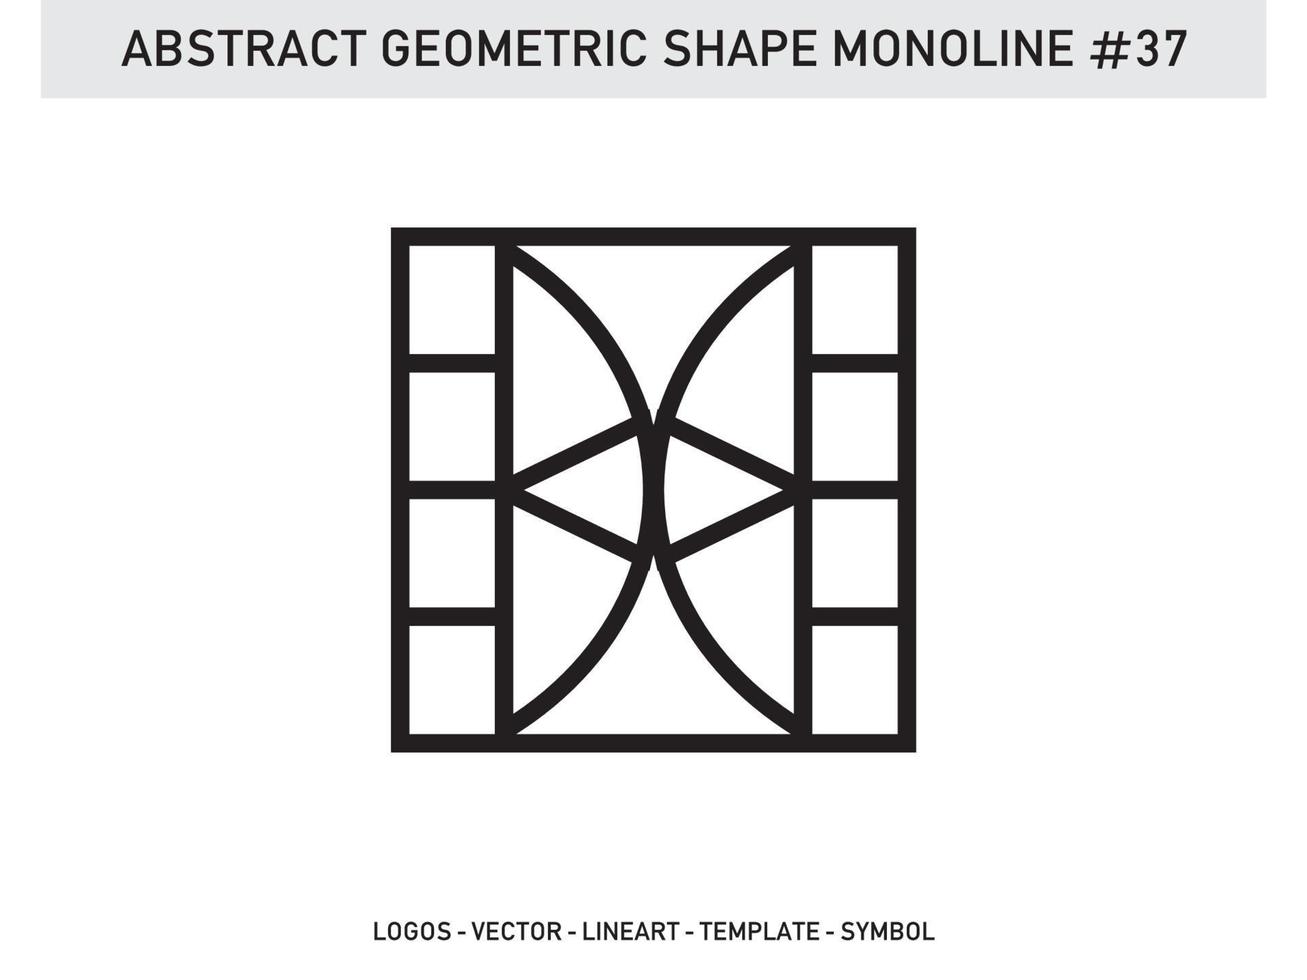 cadres géométriques formes polygonales abstraites bordures élégantes symboles d'éléments vecteur gratuit